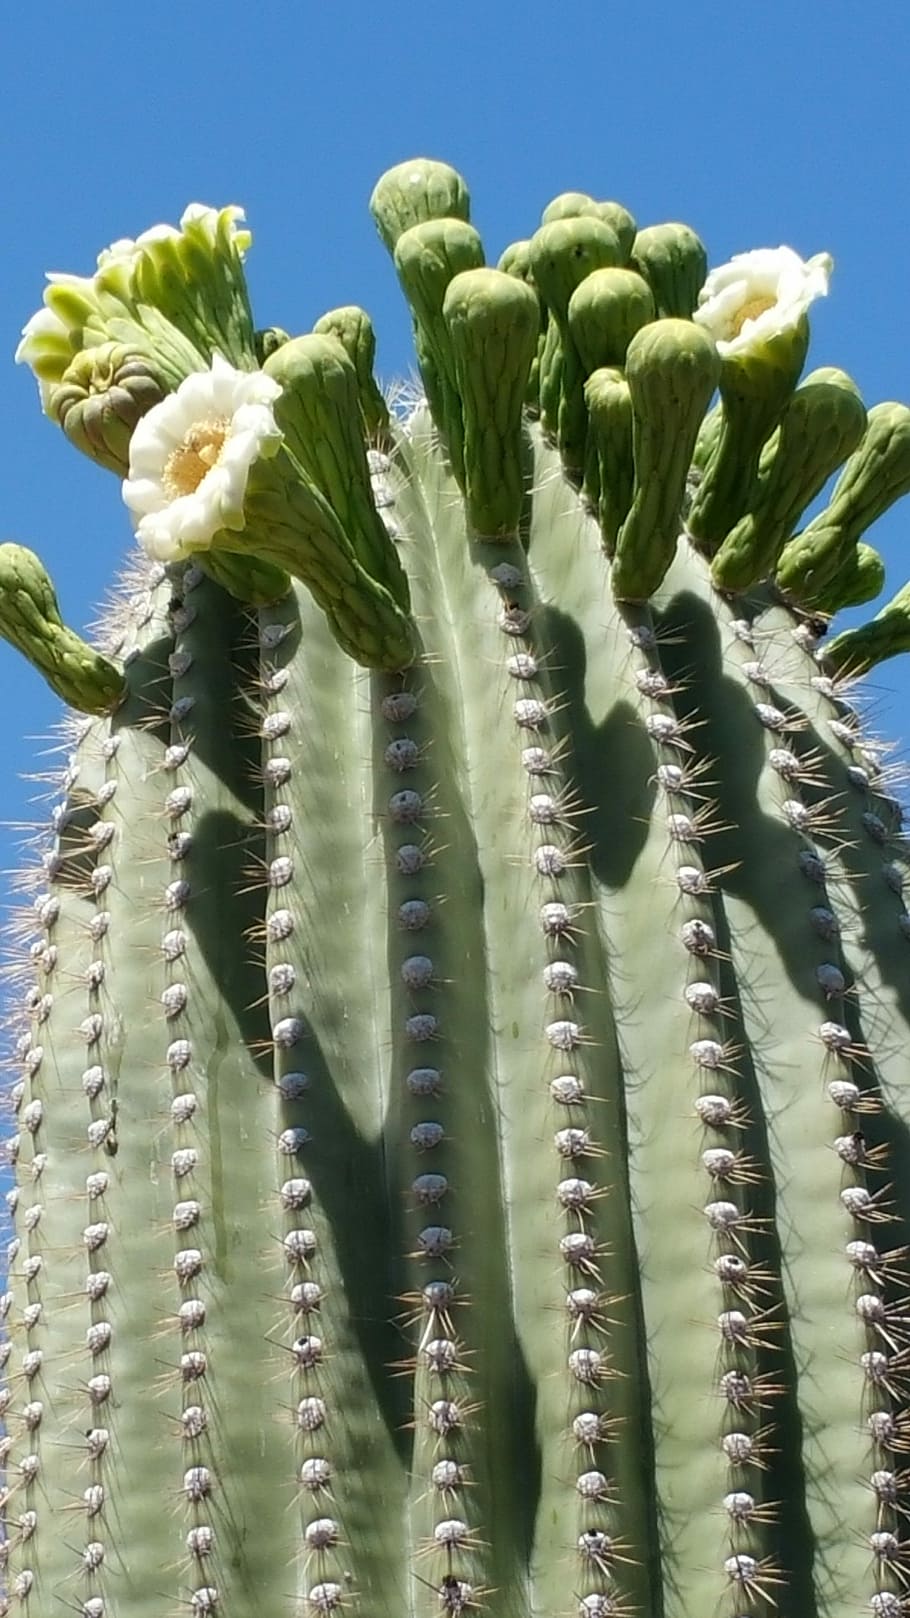 Saguaro, Sonoran Desert, Cactus, sonoran desert cactus, cactus flower